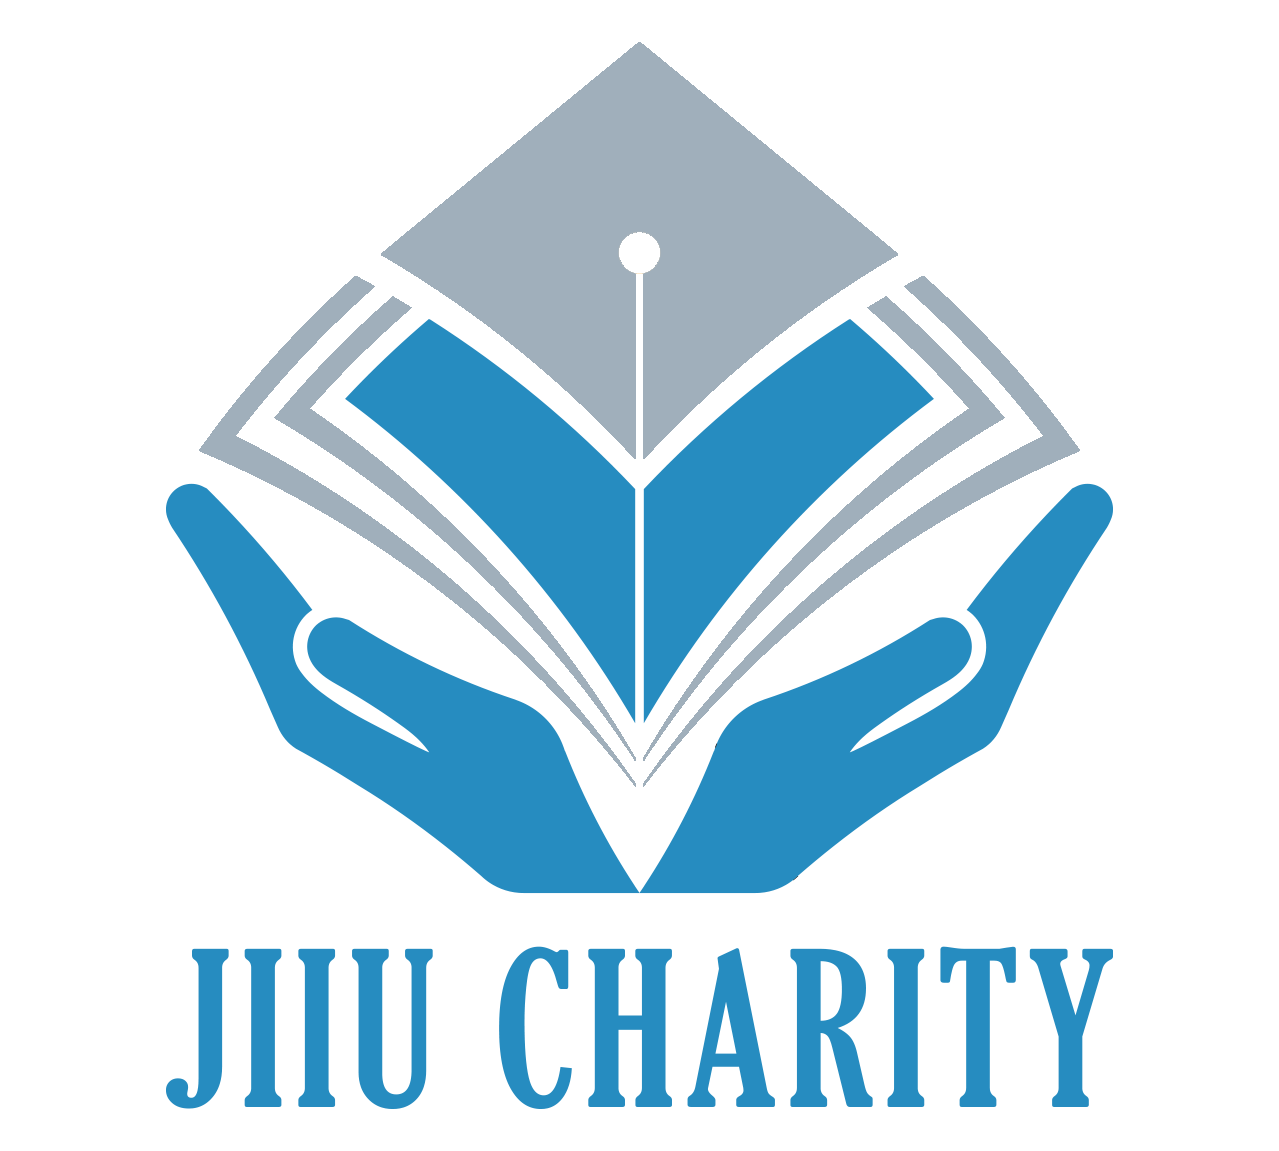 JIIU Charity